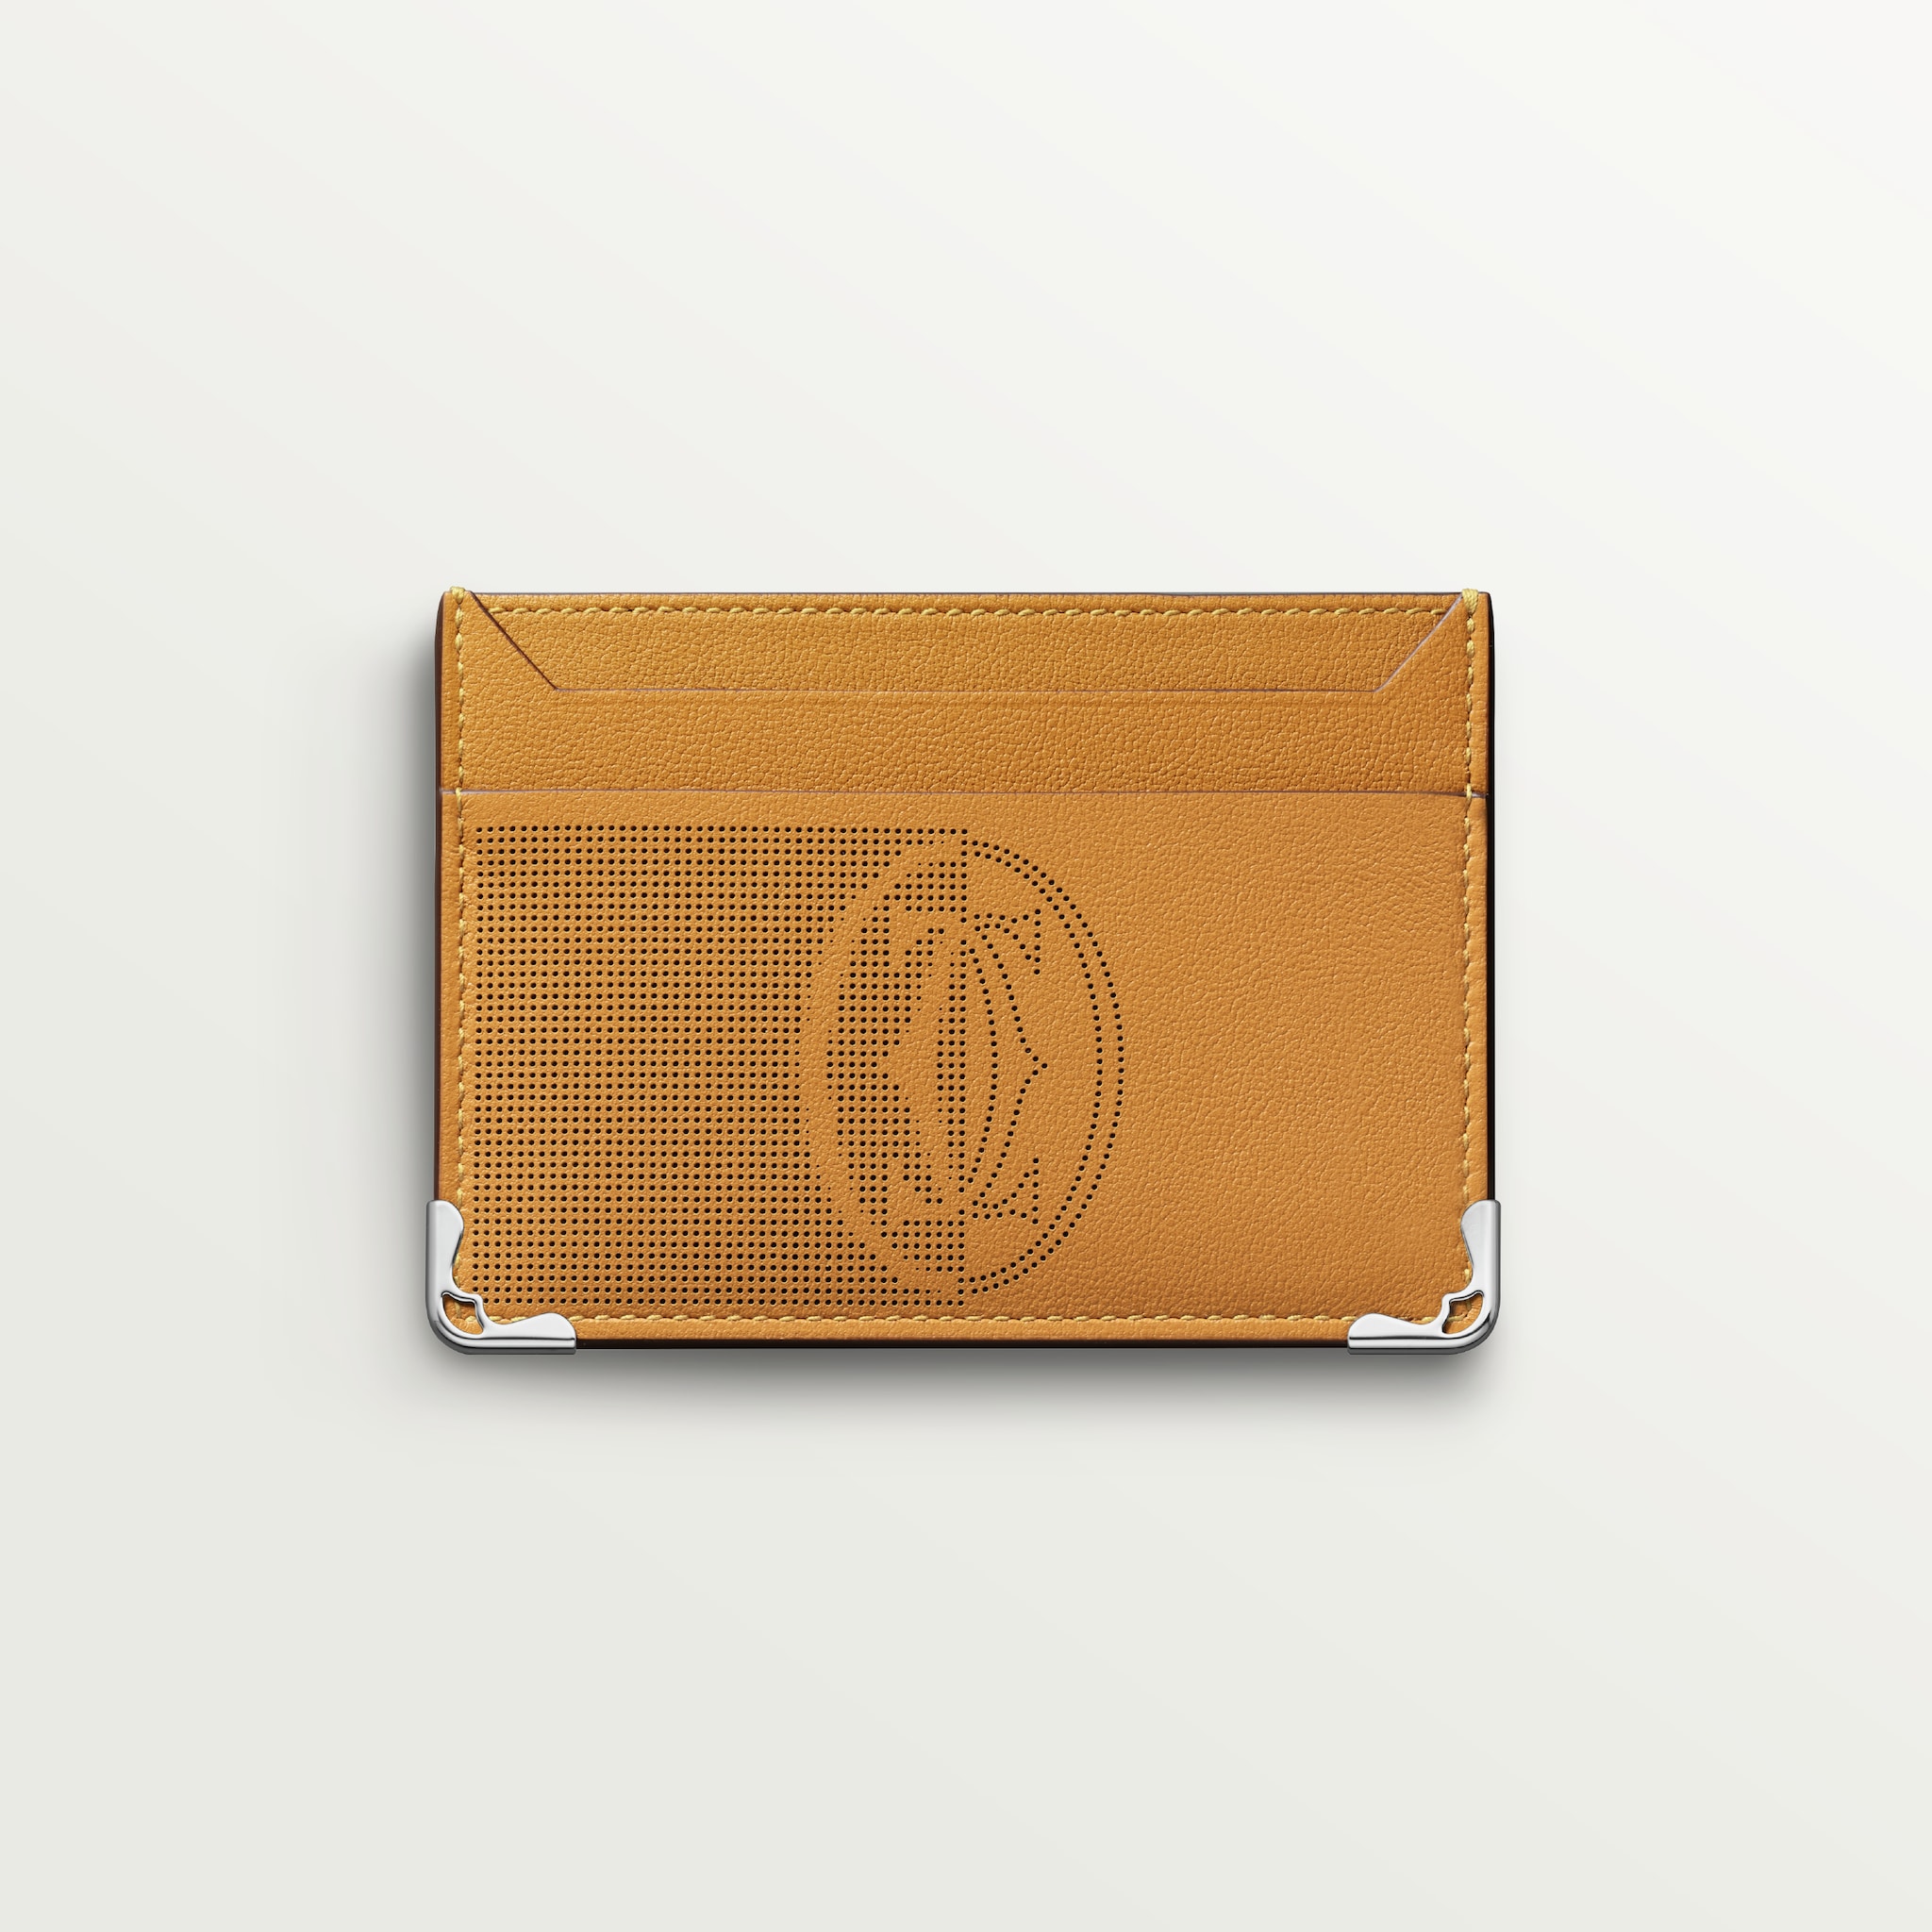 双卡片夹，Must de Cartier系列茴香棕黄色小牛皮，镀钯饰面